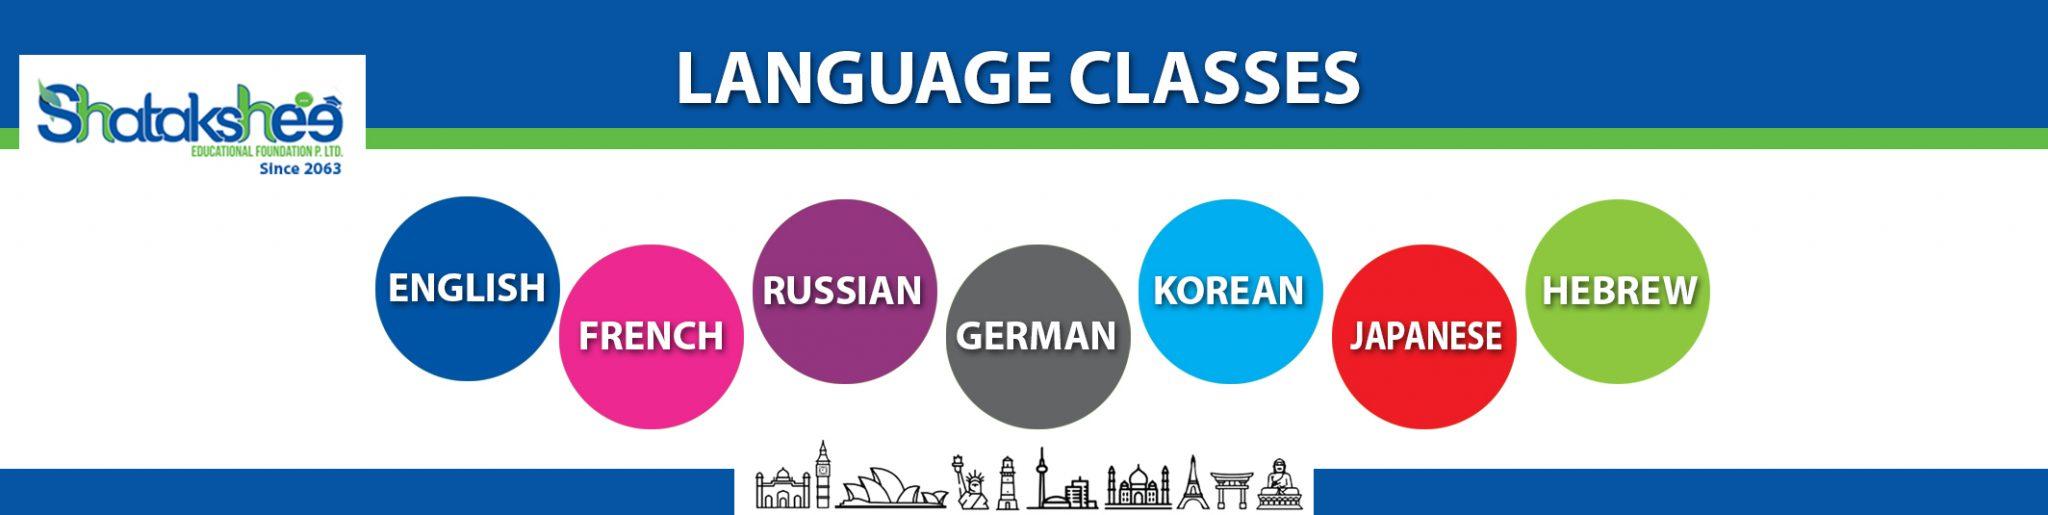 Language Classes